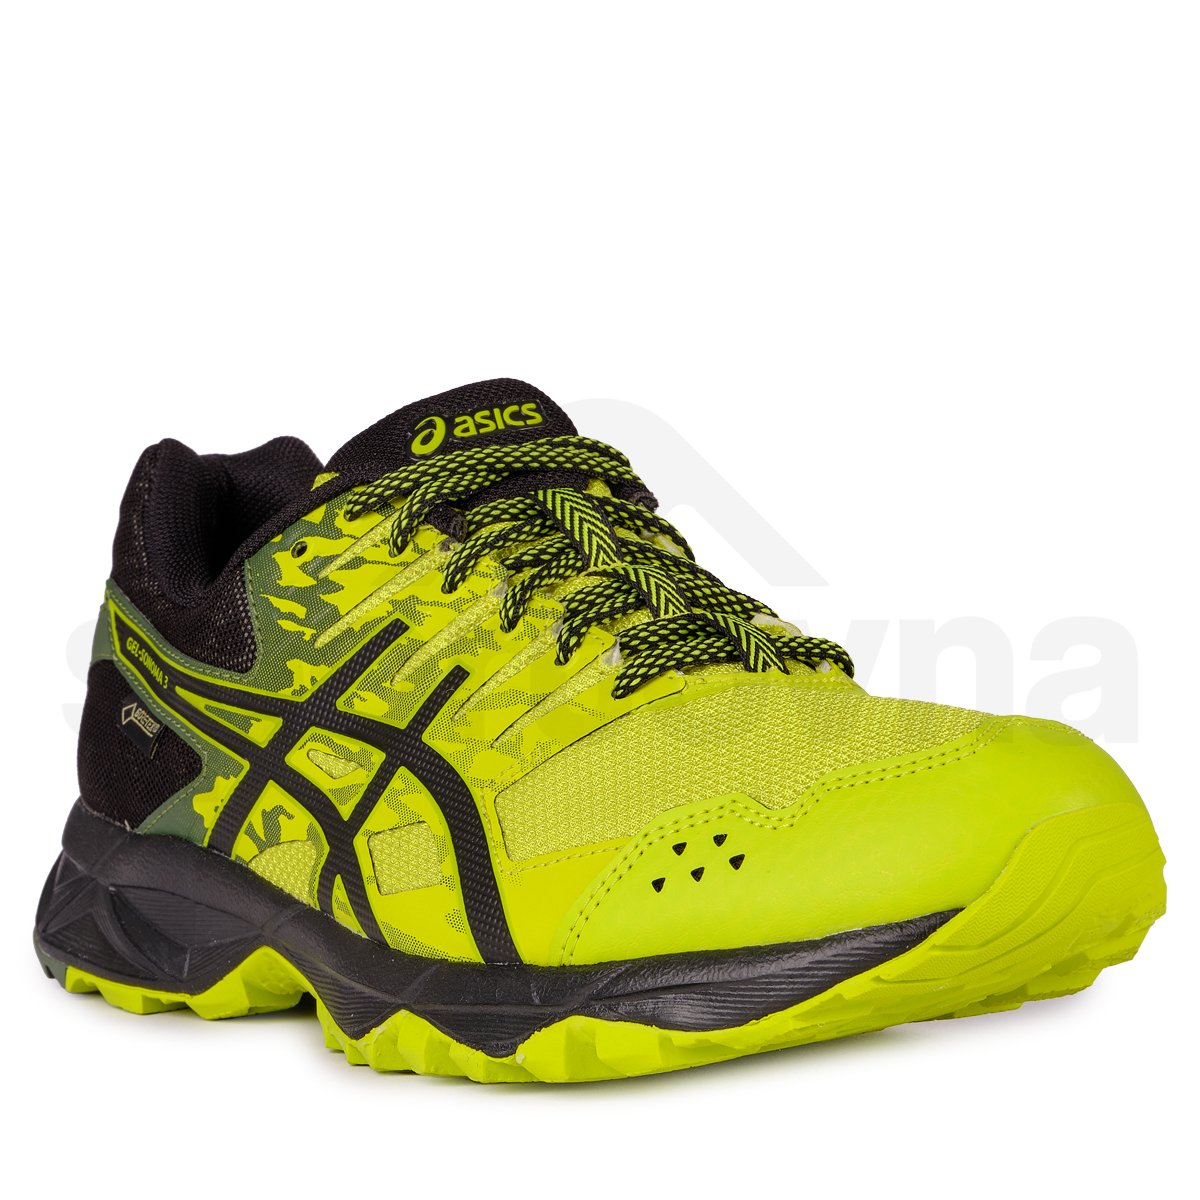 Pánská běžecká obuv Asics Gel Sonoma GTX M - černá/žlutá